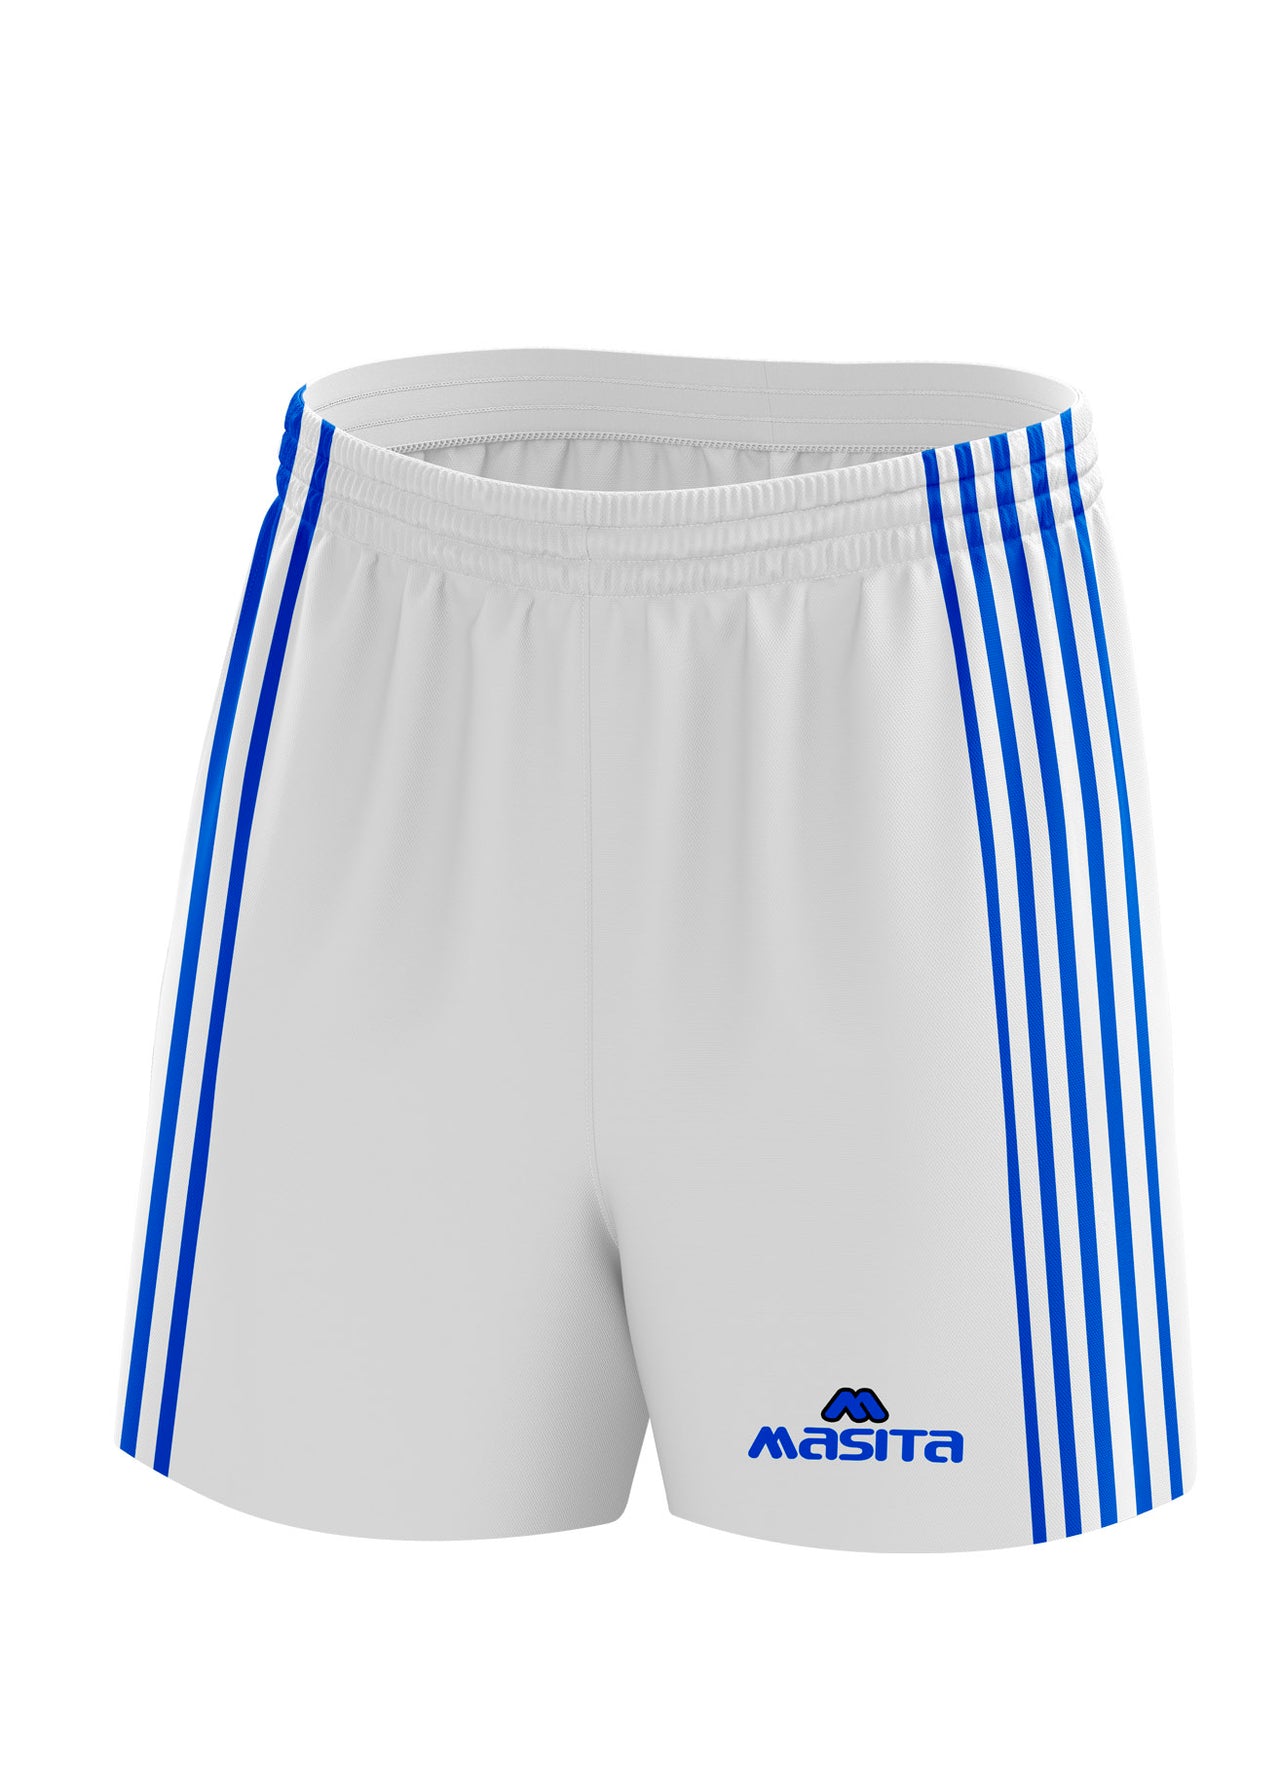 Donard Gaelic Shorts White/Blue Adult